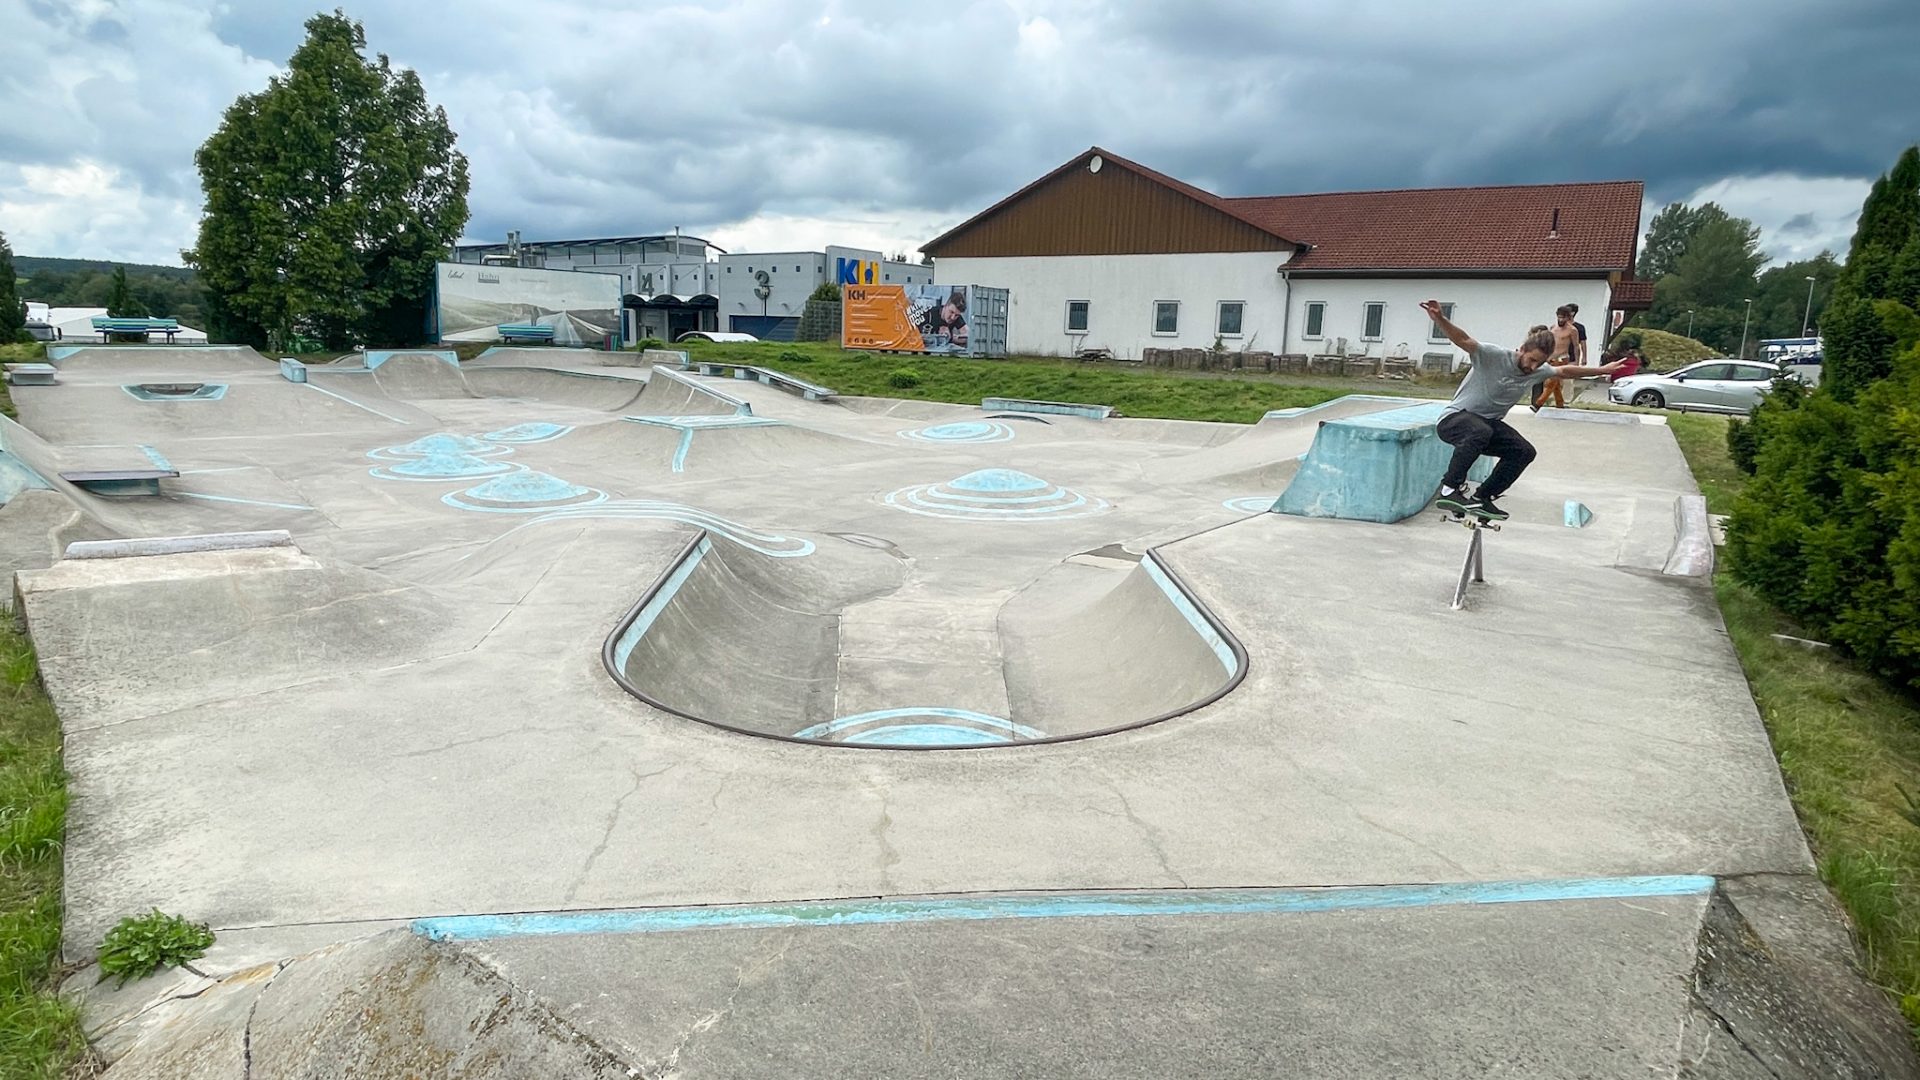 Helmbrechts Skatepark – Kreatives Skaten im Hofer Land